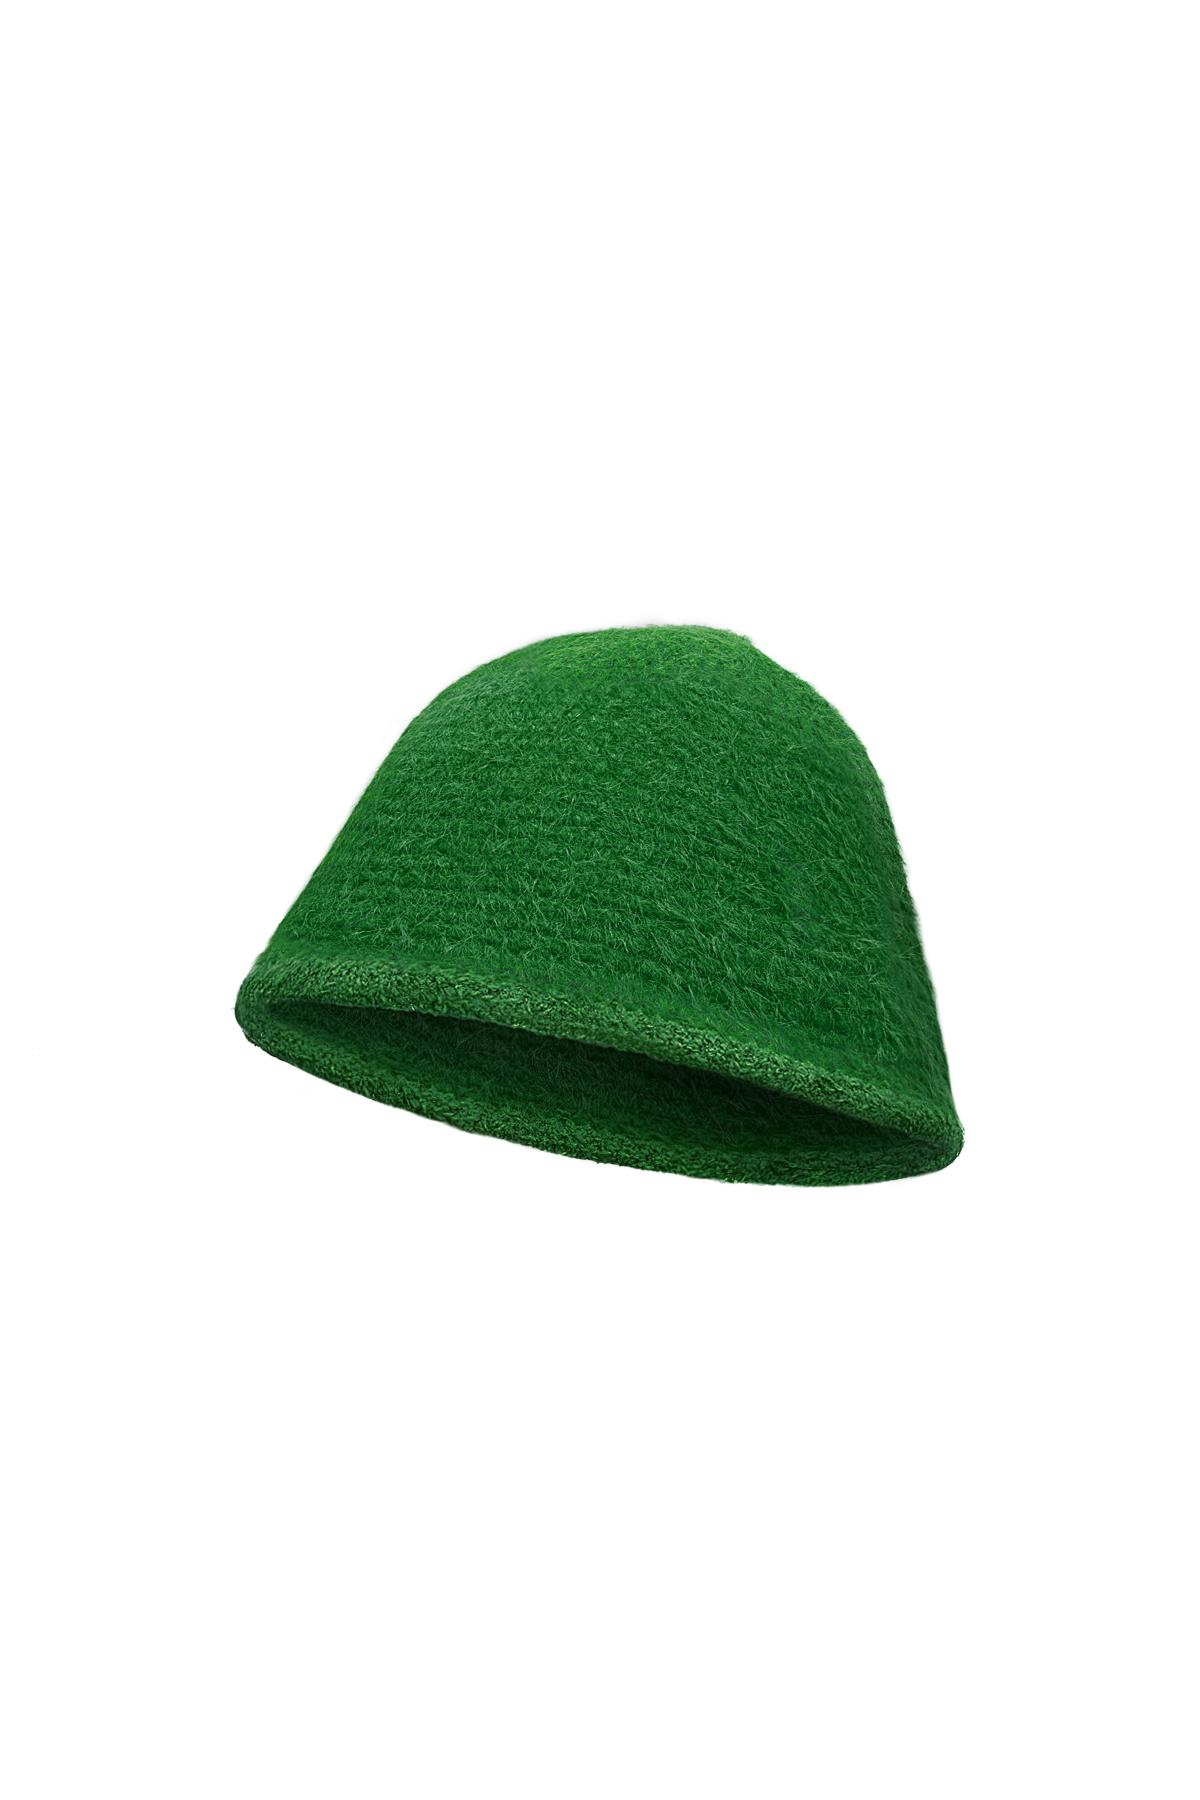 Cappello da pescatore basic Green Polyester h5 